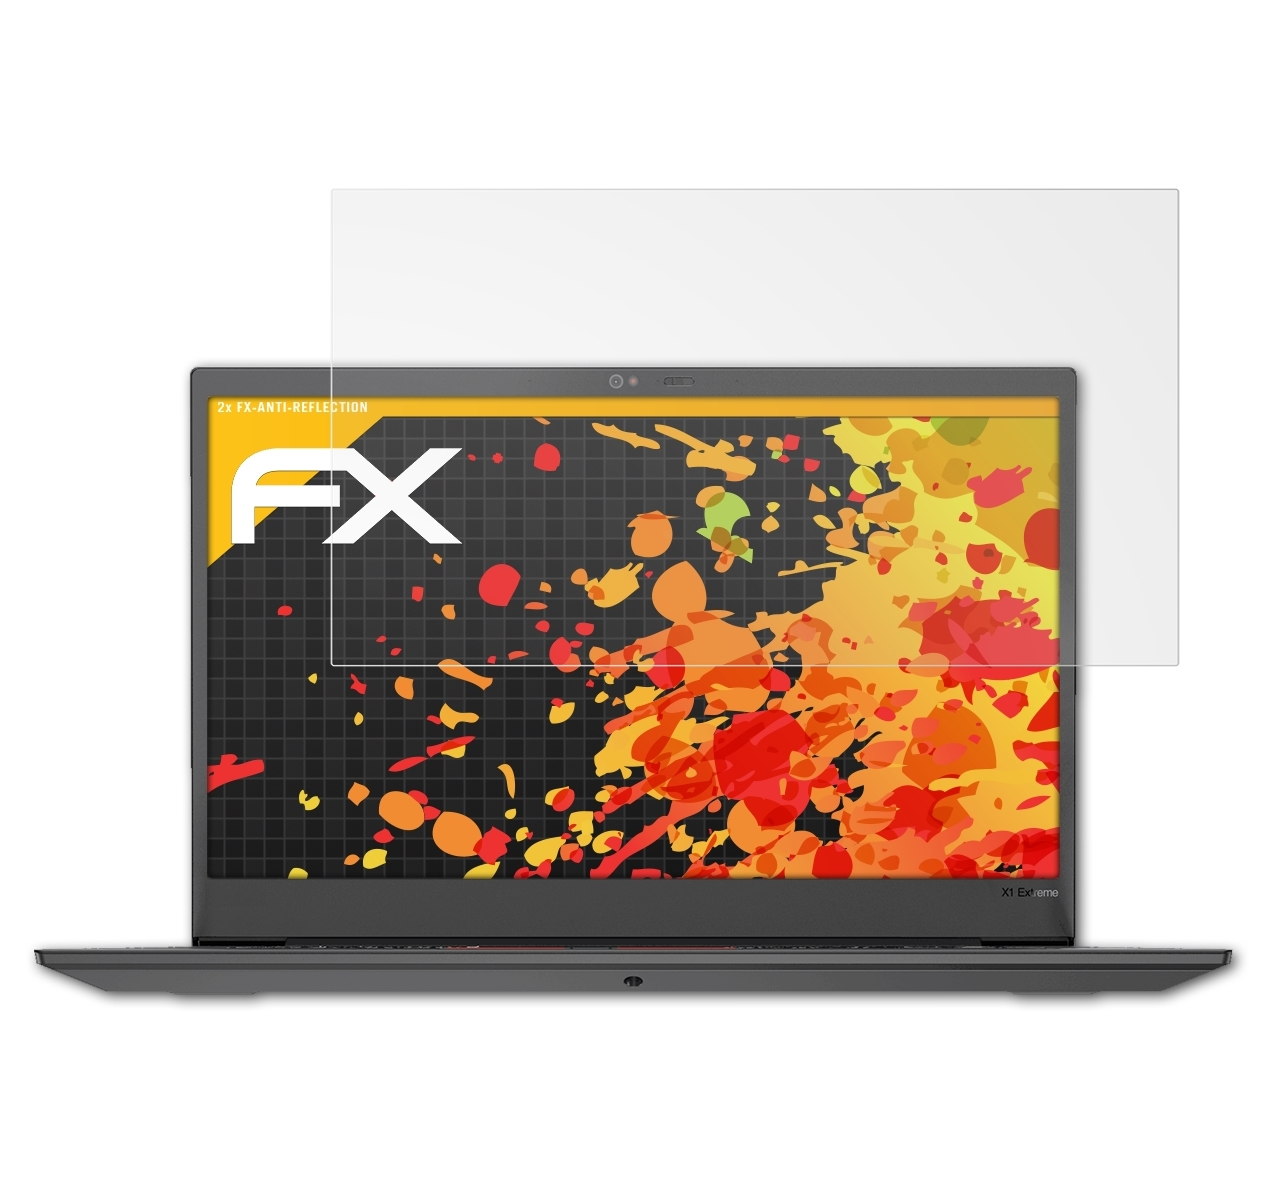 ATFOLIX 2x FX-Antireflex Displayschutz(für Lenovo Extreme X1 (Gen ThinkPad 2))